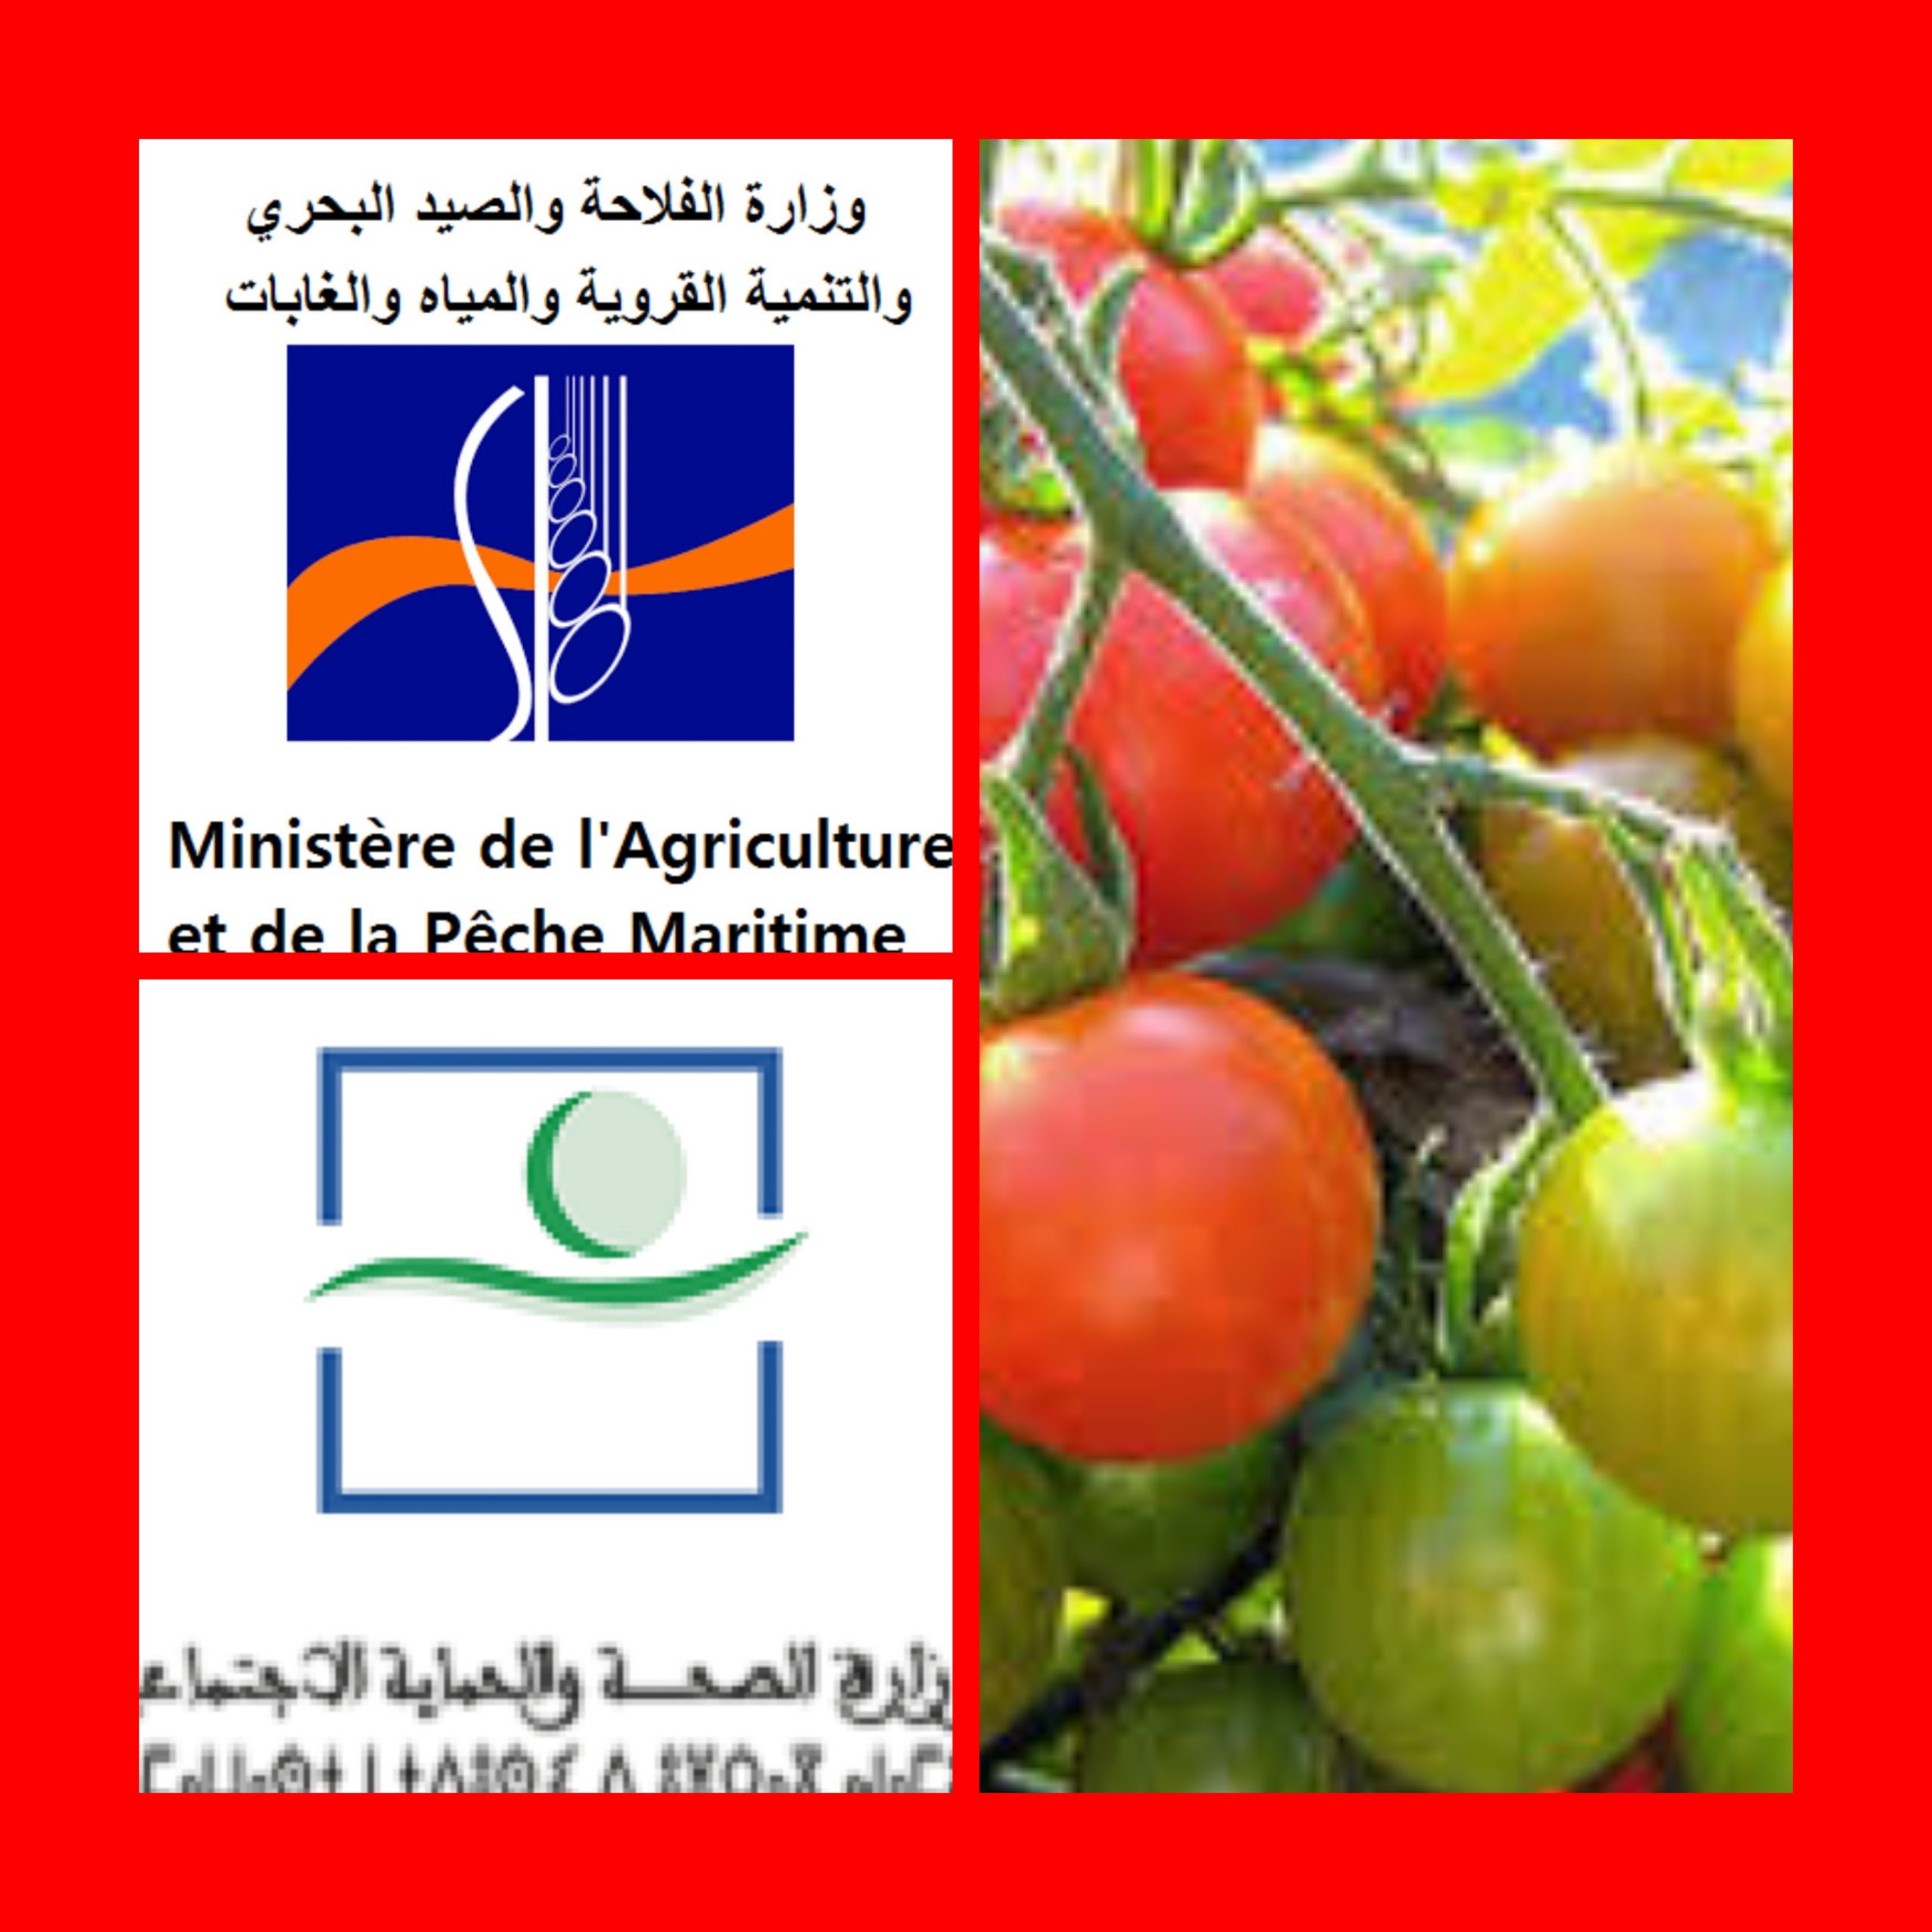 تسمم الطماطم المغربية ووزارة الفلاحة والصحة تلتزمان الصمت